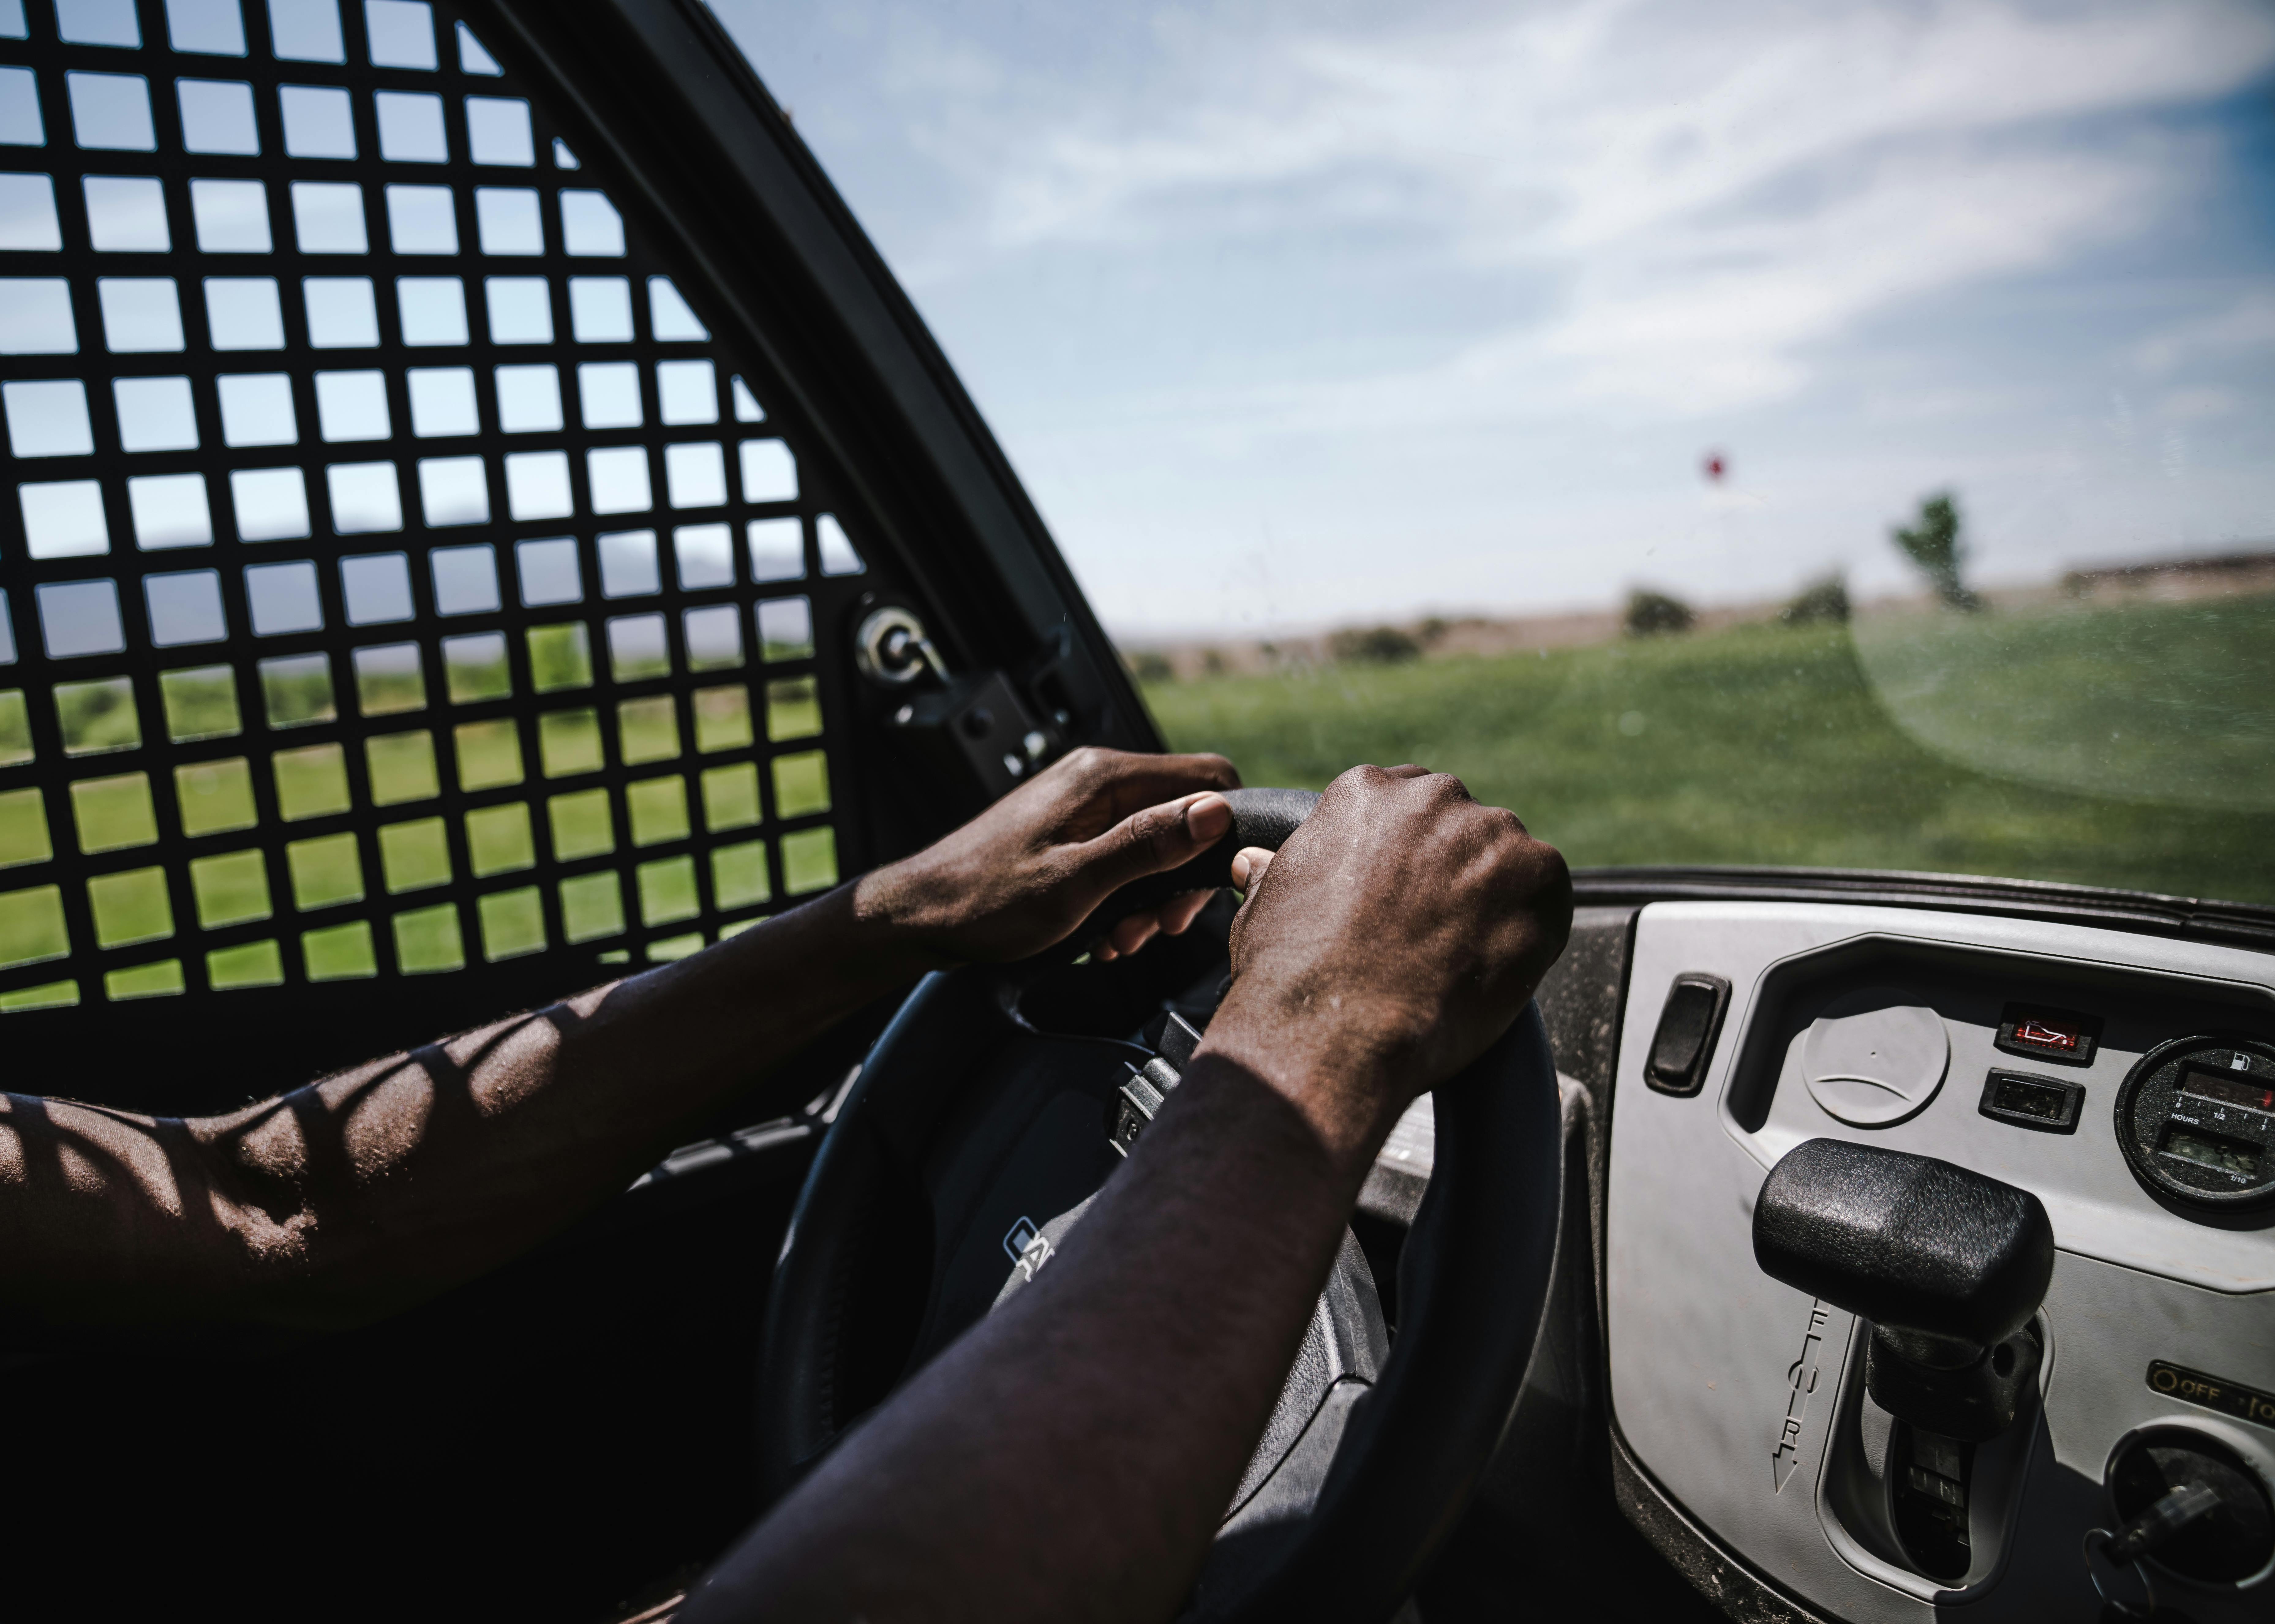 2019 volkswagen Golf review